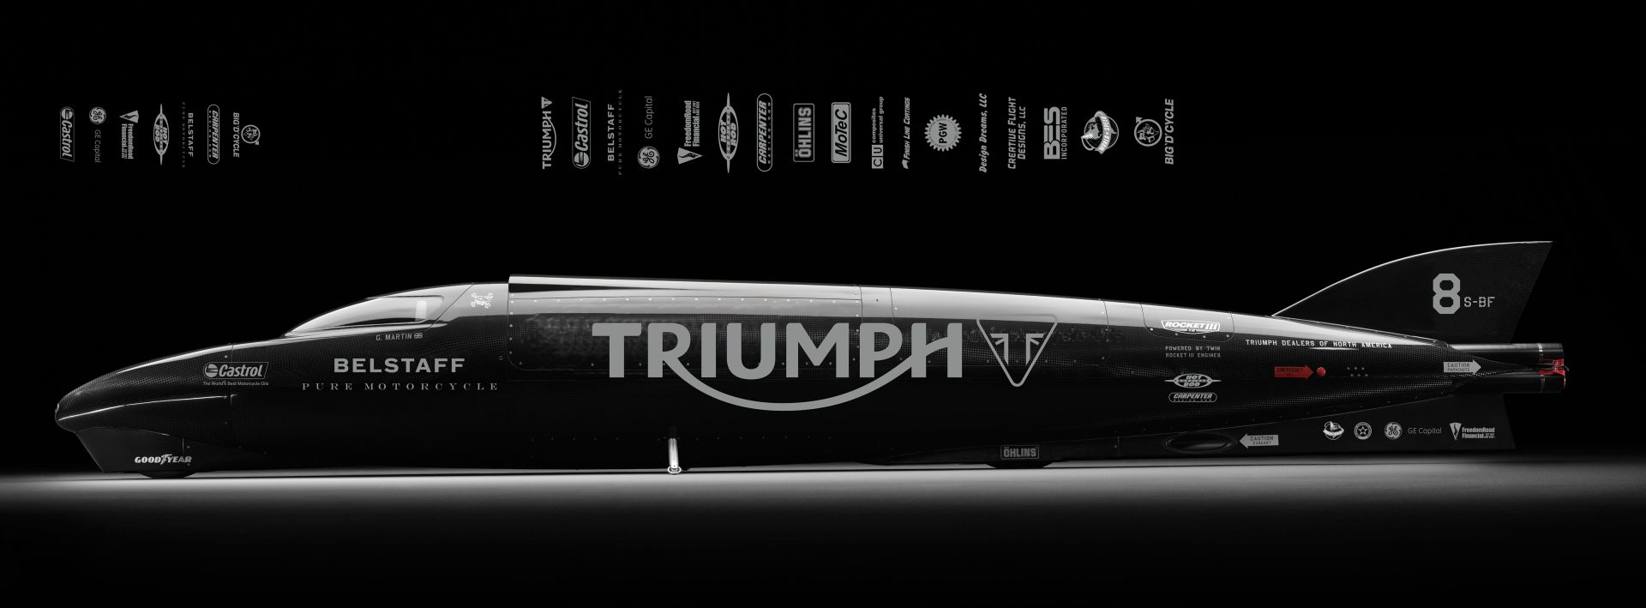 Lo streamliner Triumph che tenter il record  una motocicletta lunga 7,77 metri, larga appena 60 cm e alta 91 cm . La monoscocca  in Kevlar e i due motori turbocompressi sono alimentati a metanolo, derivati dalla dotazione di serie della Triumph Rocket III, per una potenza complessiva di 1.000 cv a 9.000 giri. 